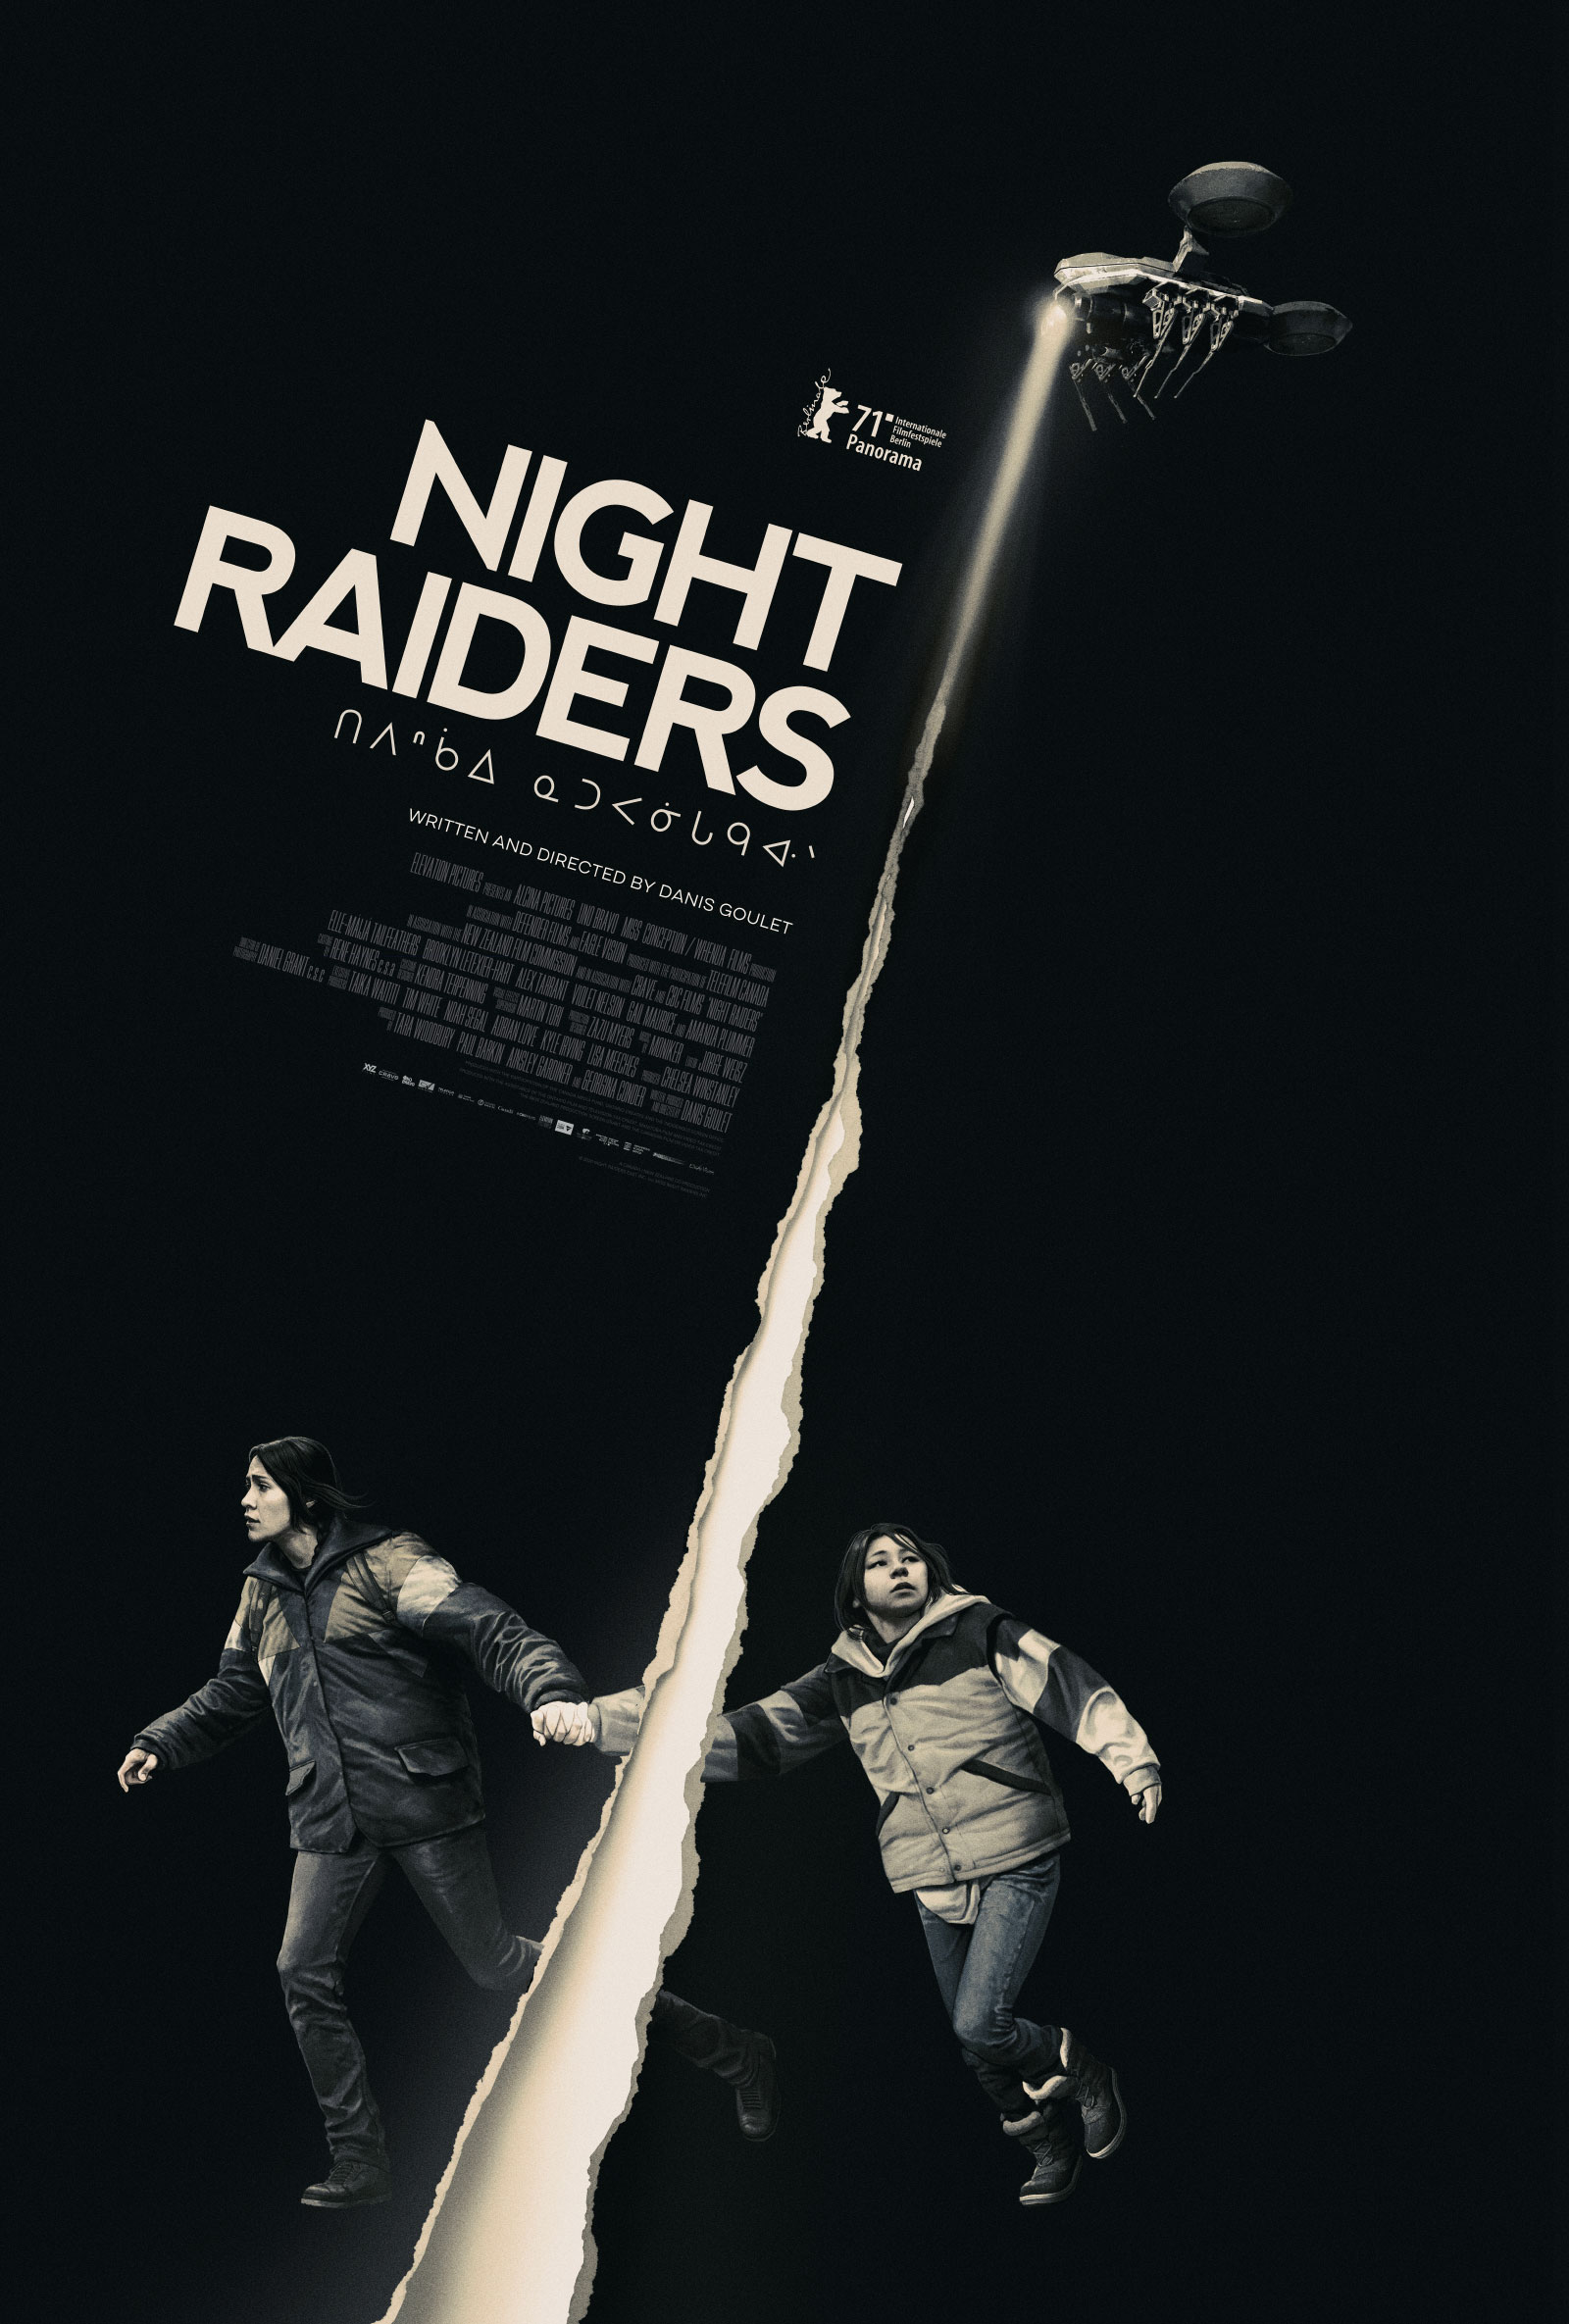 Where to watch Night Raiders